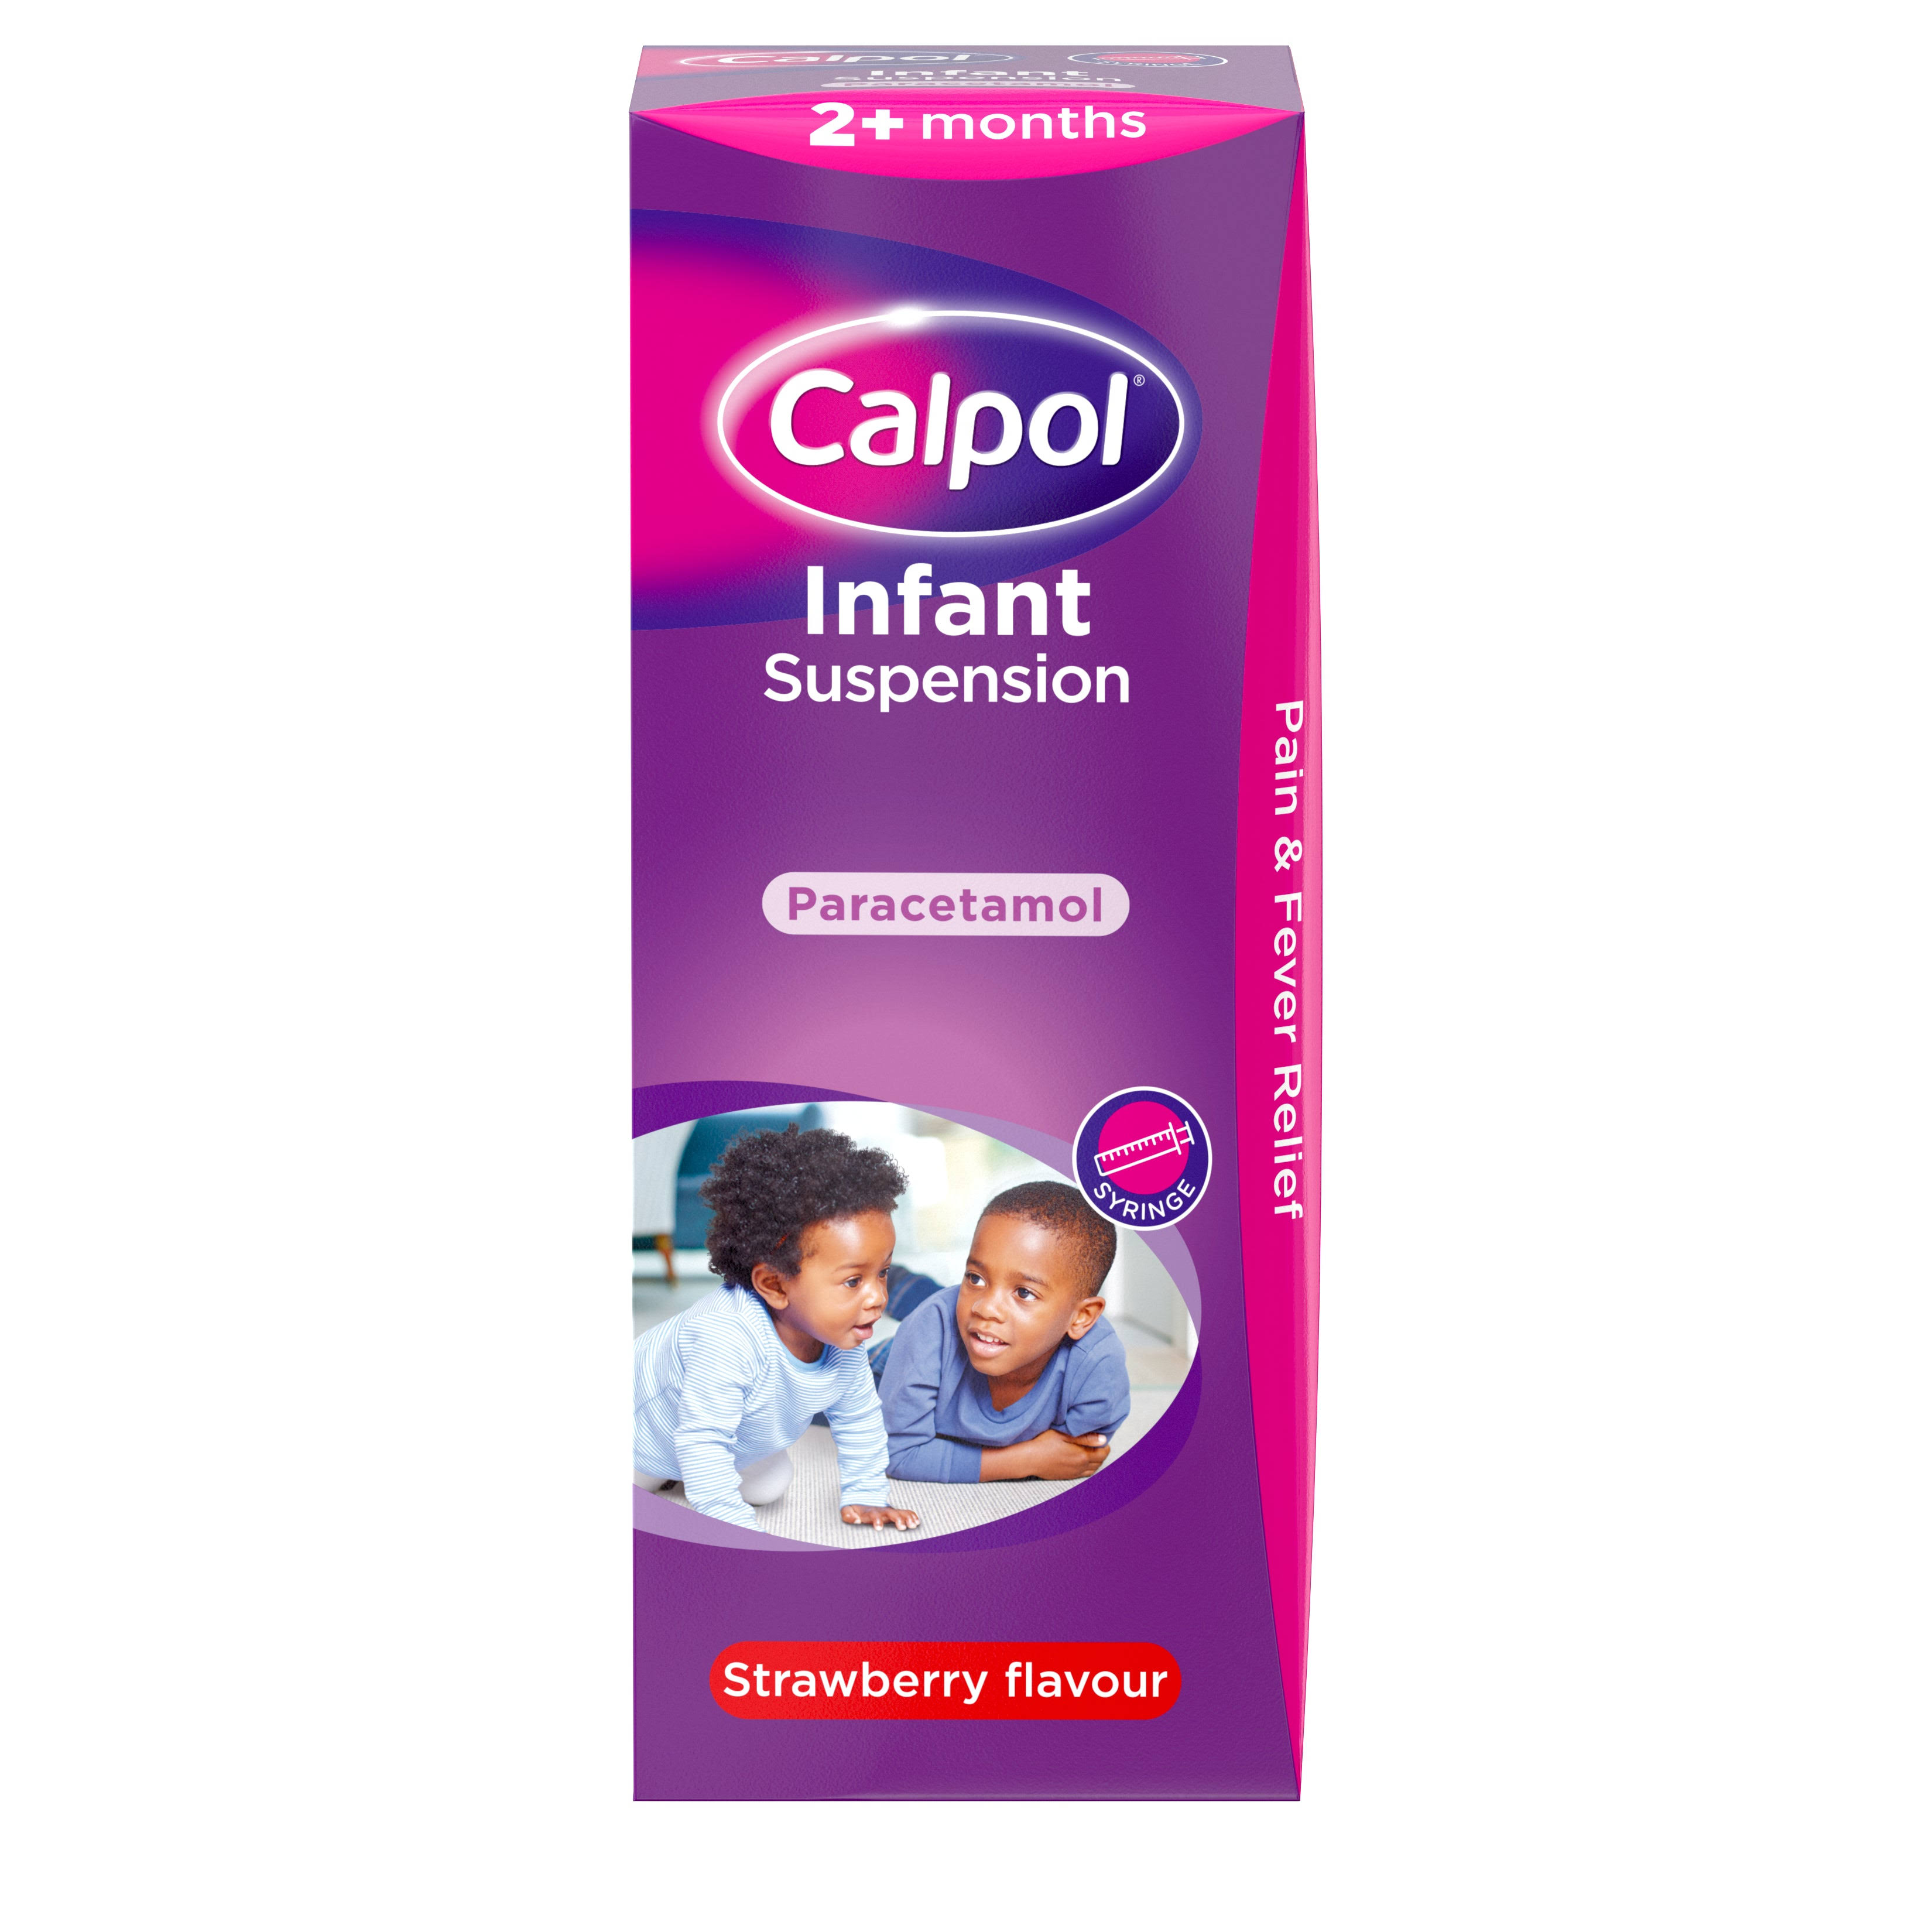 Calpol Infant Paracetamol Suspension - Strawberry Flavour, 2 Plus Months, 200ml